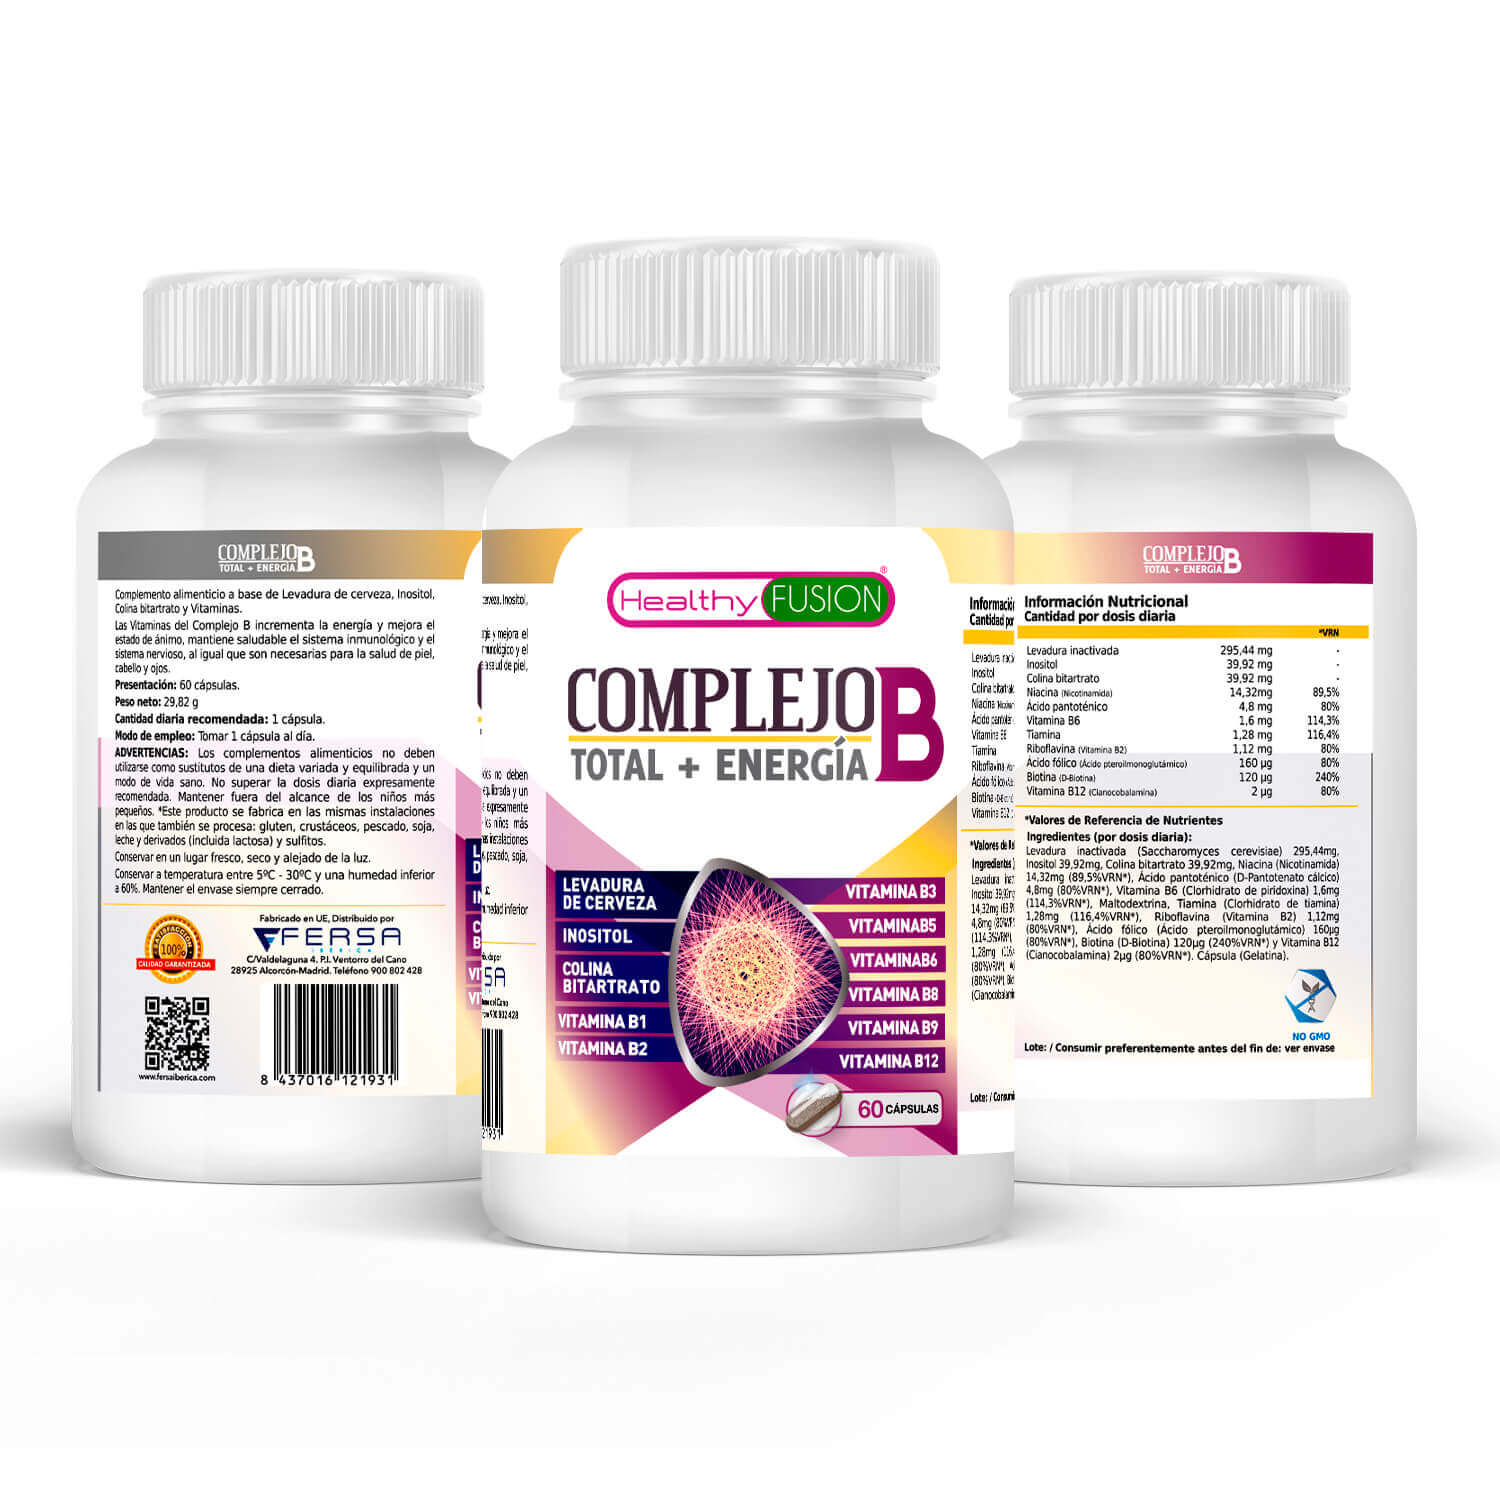 Healthy Fusion - Complejo B contenido